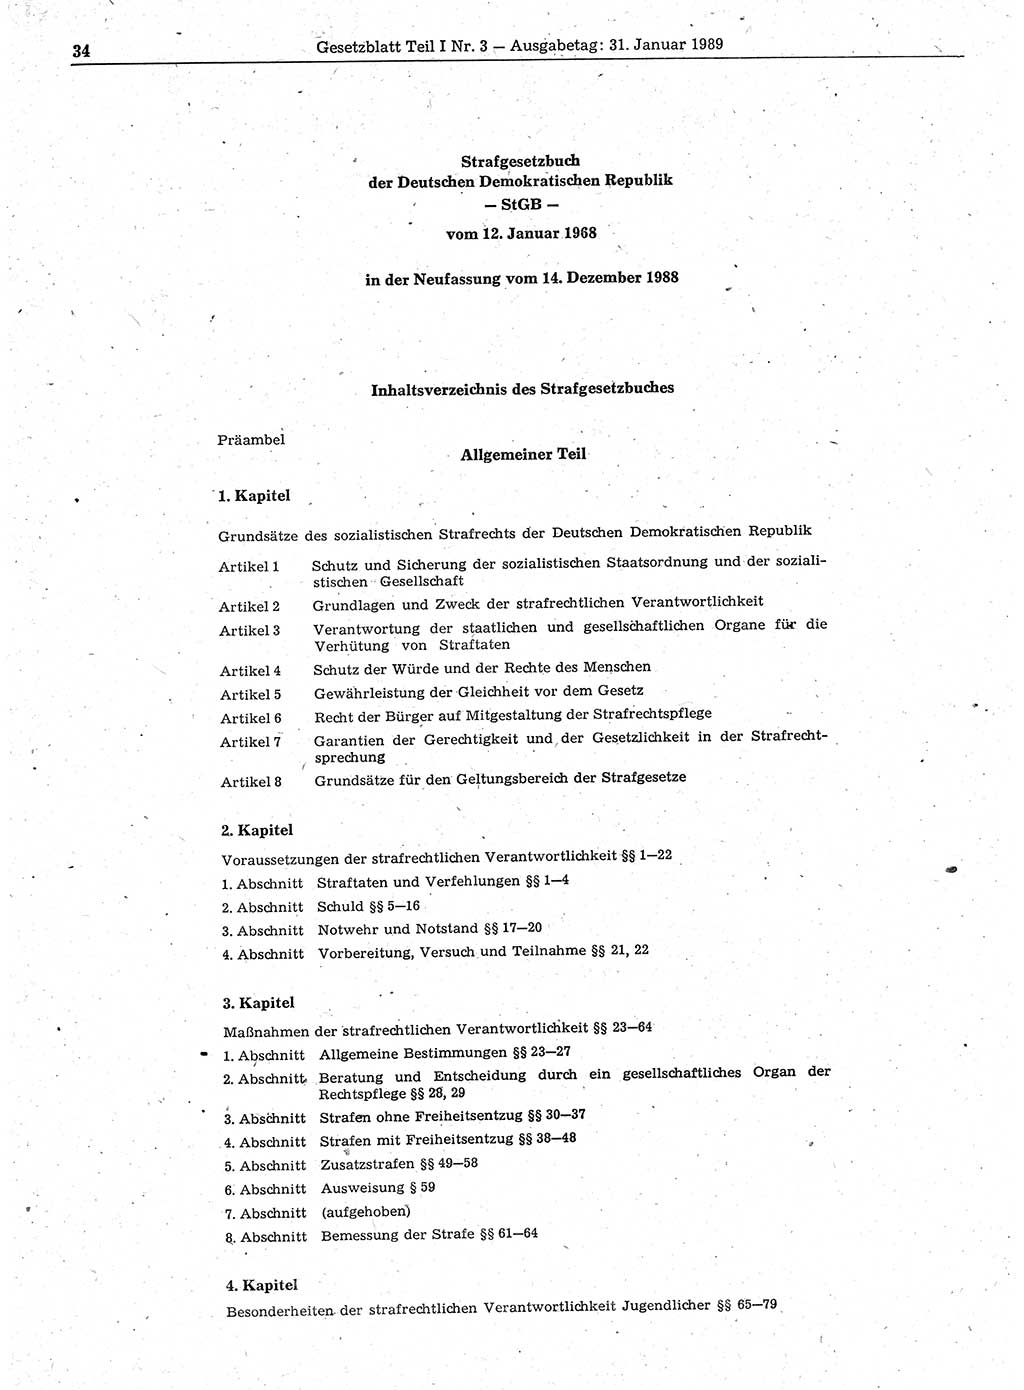 Gesetzblatt (GBl.) der Deutschen Demokratischen Republik (DDR) Teil Ⅰ 1989, Seite 34 (GBl. DDR Ⅰ 1989, S. 34)